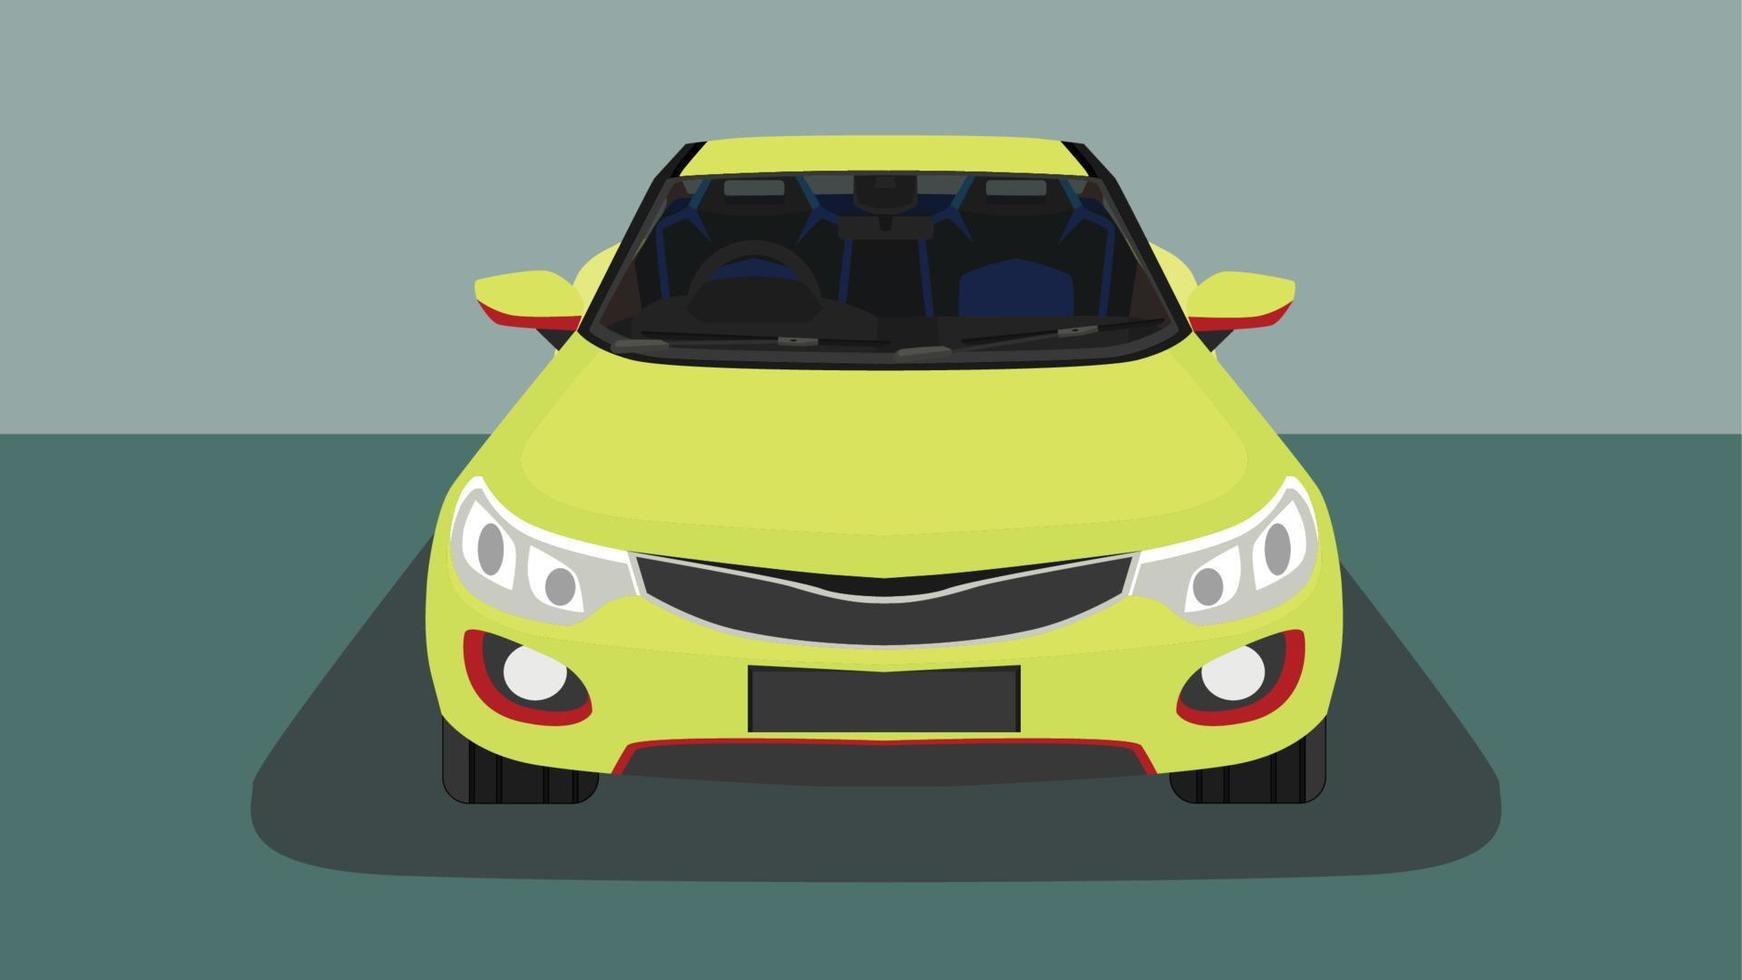 vektor eller illustration av främre sportbil gul färg. synlig interiörversion. med bakgrund av mörkgrön ton i utställningsrummet.